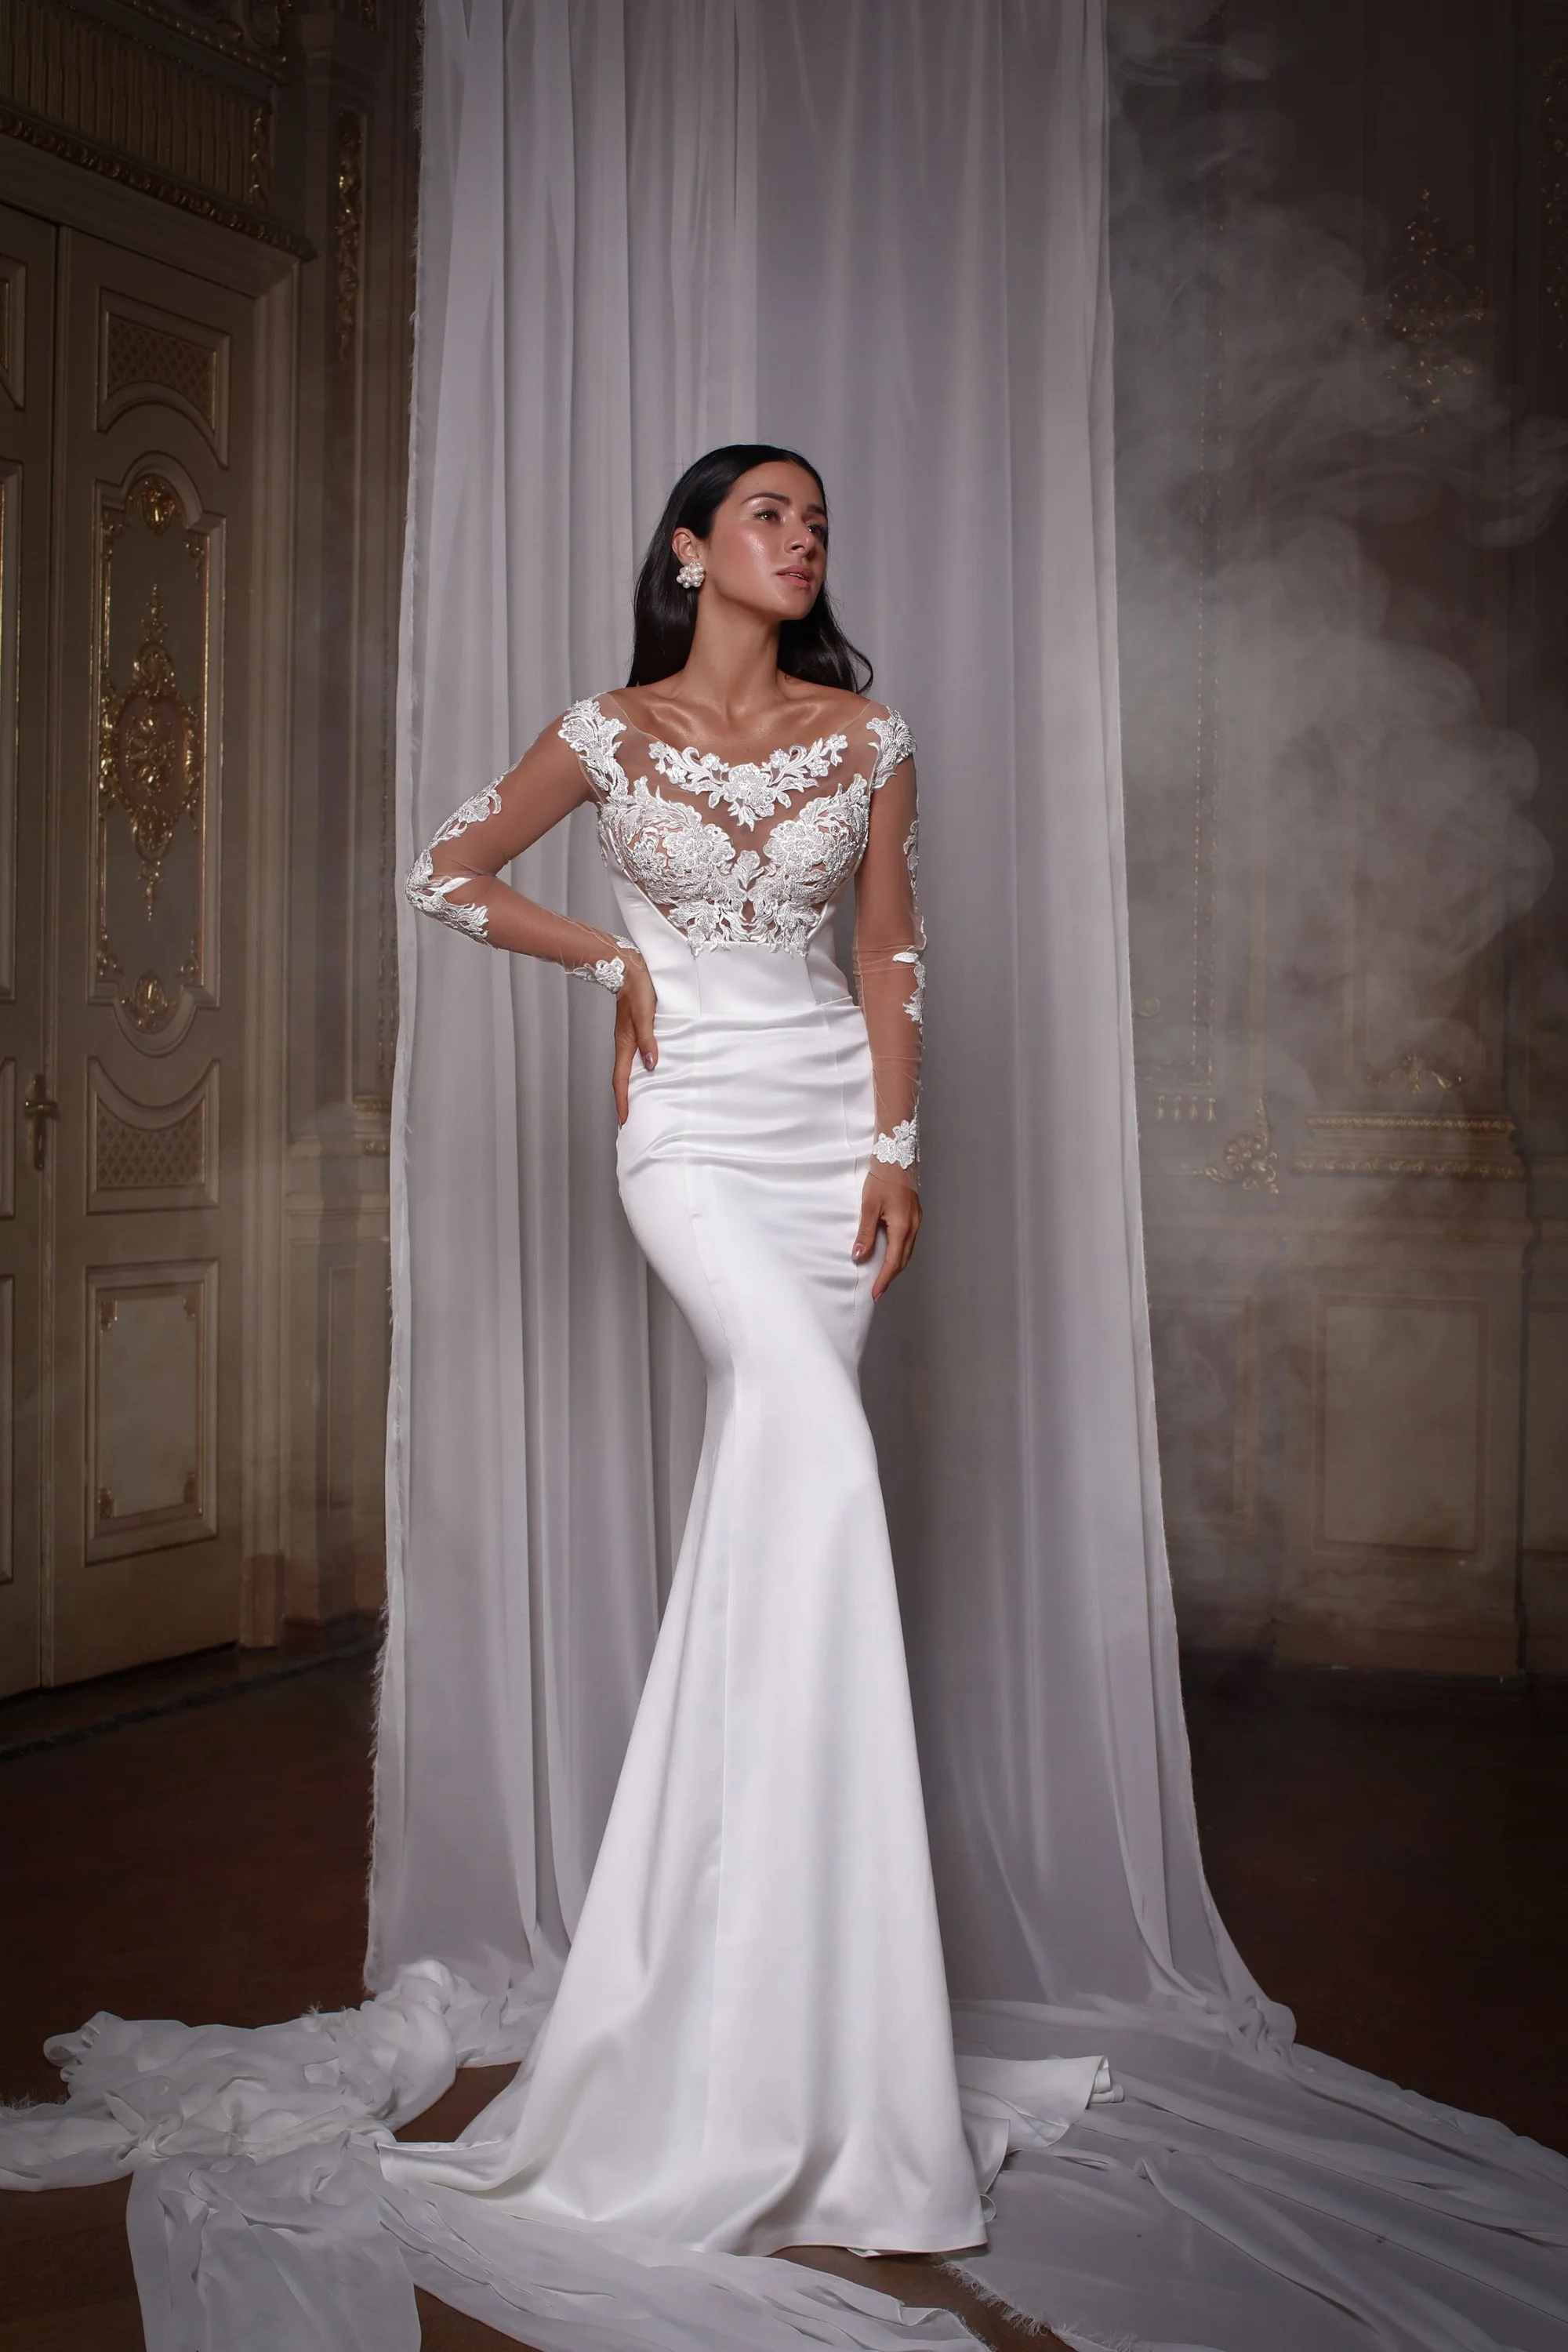 Злата Огневич и Анна Буткевич примеряли роскошные свадебные платья от Андре Тана - фото 425438